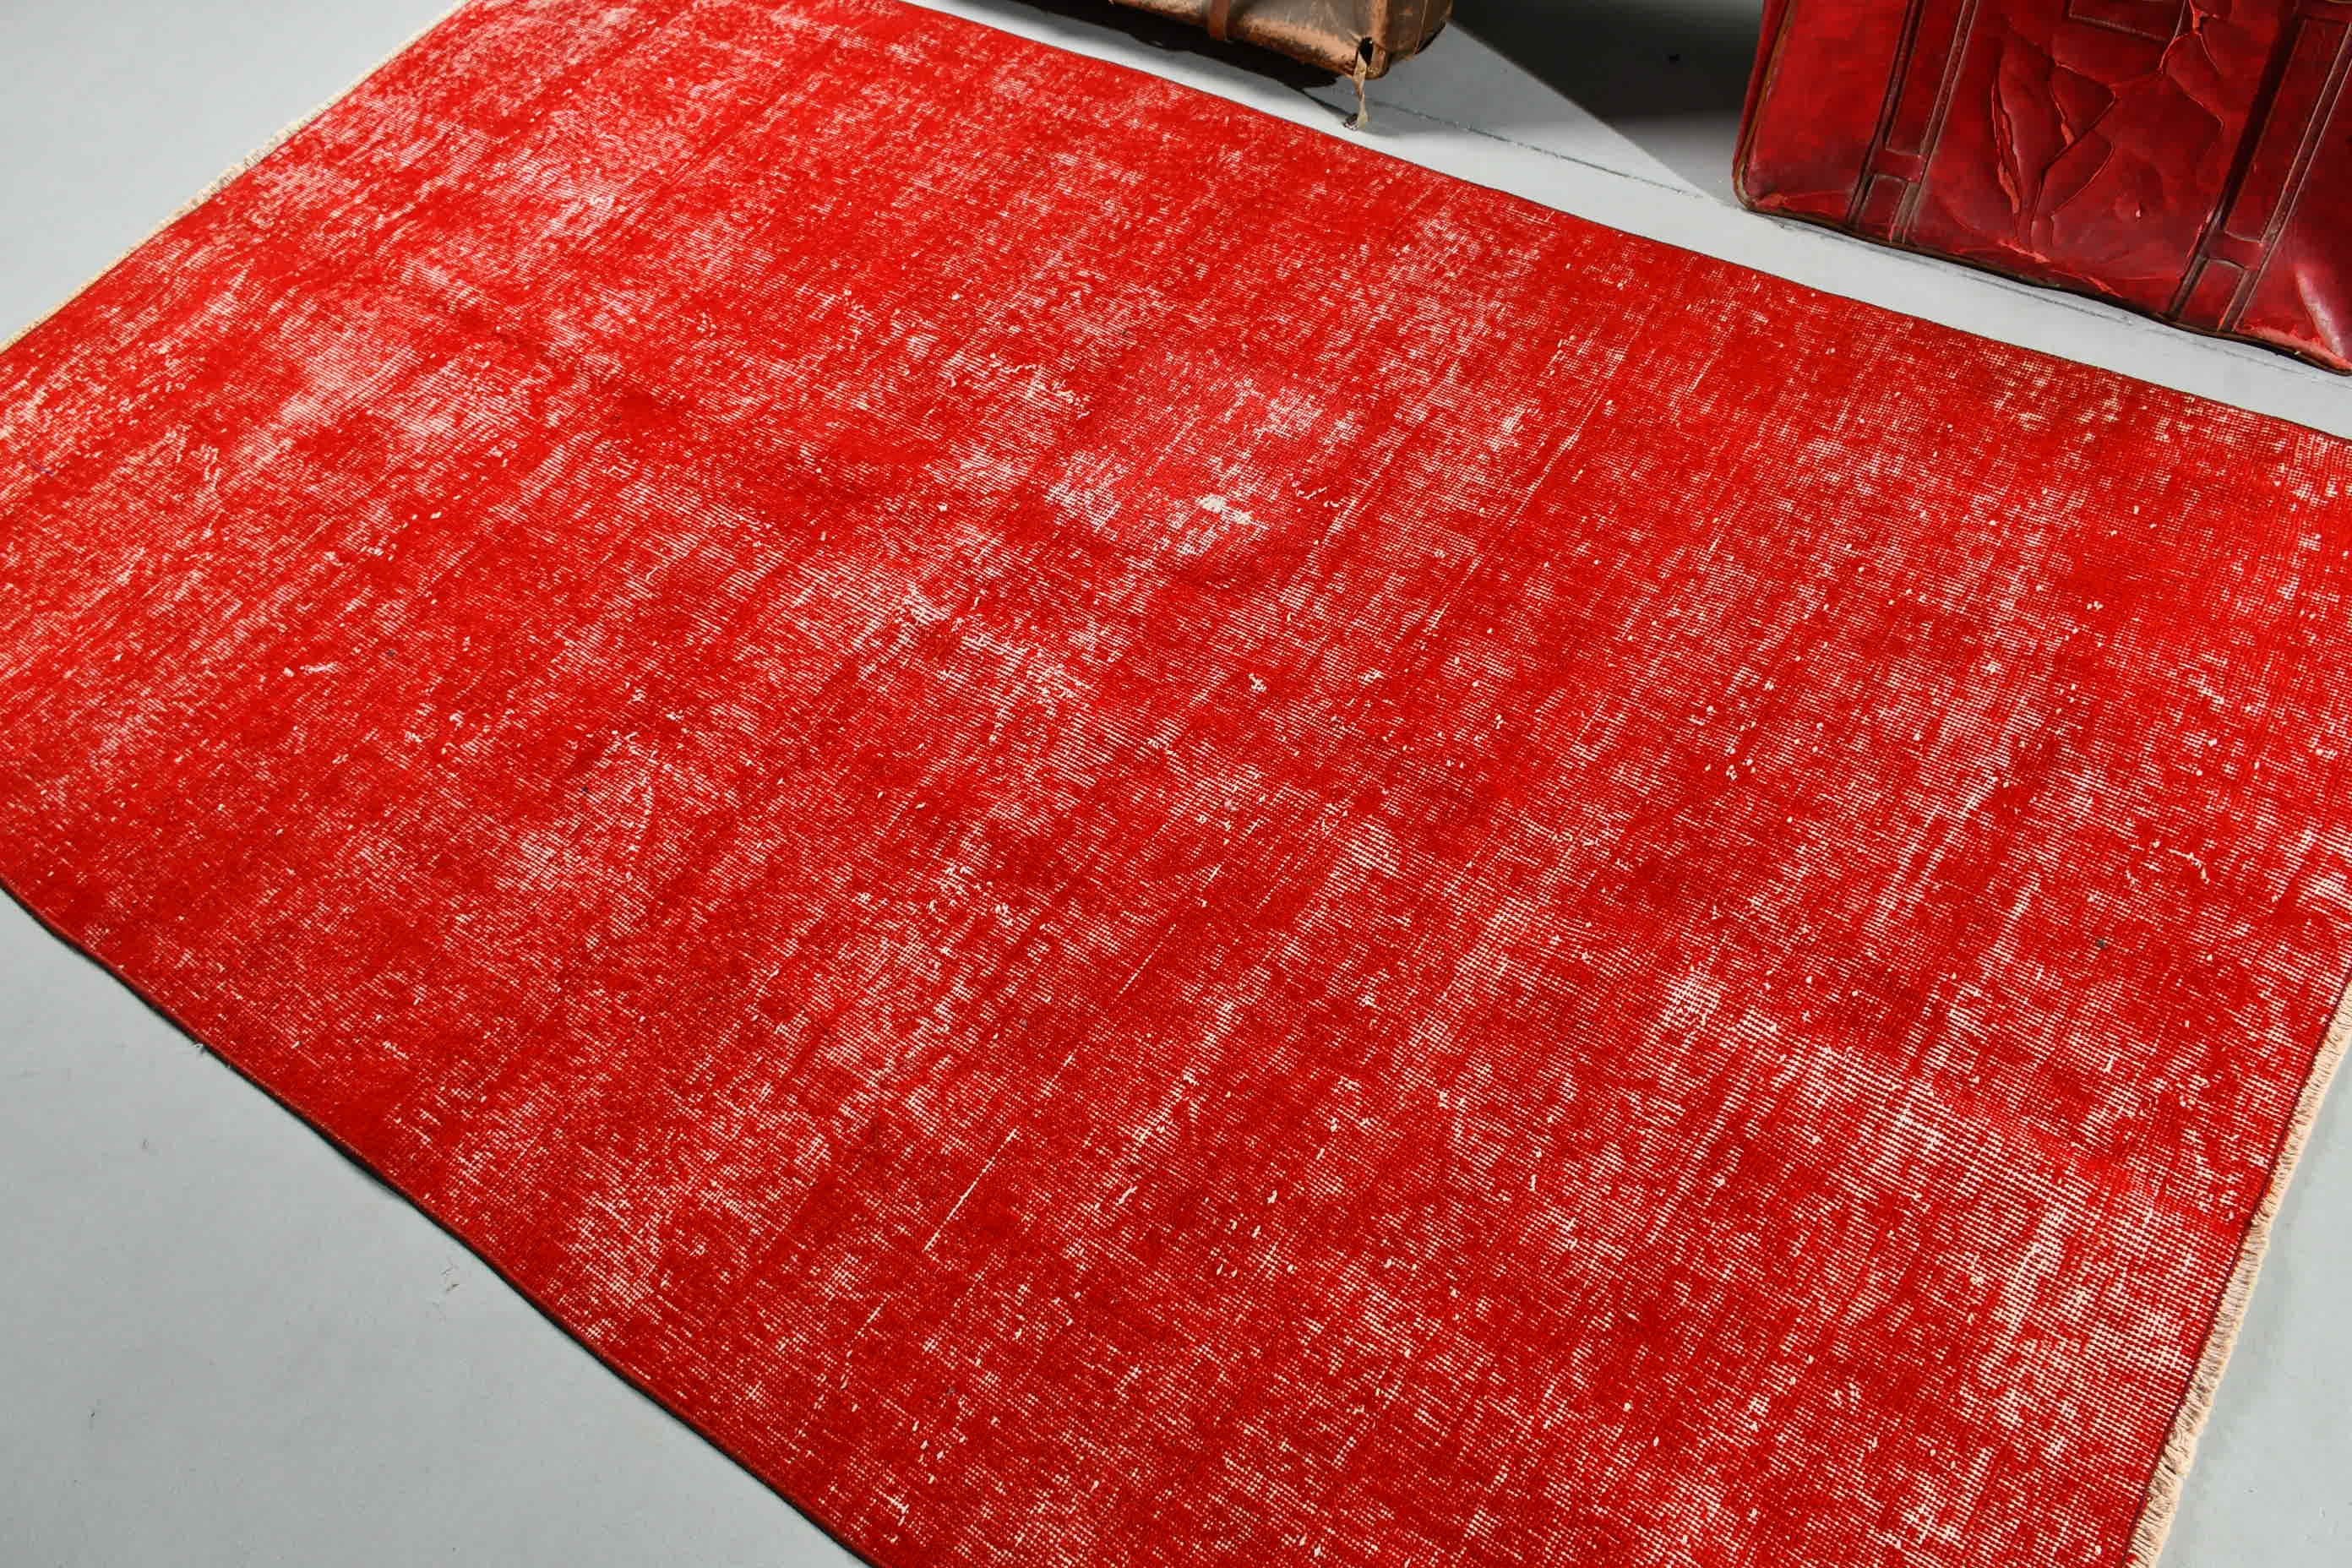 Turkish Rug, Red Oriental Rug, Bedroom Rug, Vintage Rugs, Floor Rug, Rugs for Floor, 4.8x8.1 ft Area Rugs, Old Rugs, Dining Room Rug